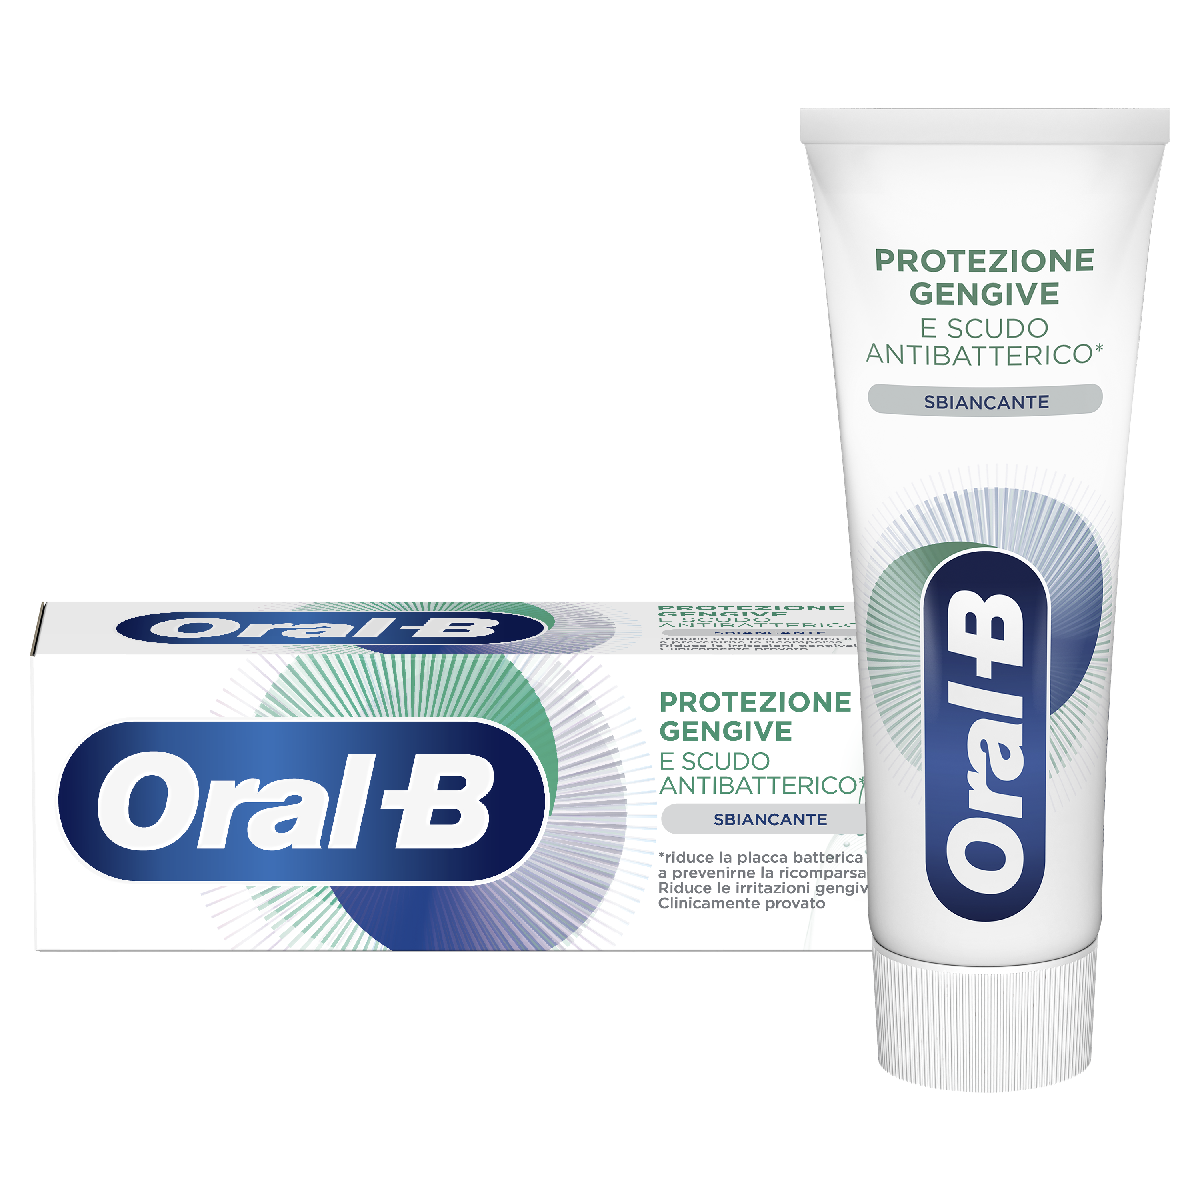 Oral-B Protezione Gengive E Scudo Antibatterico Sbiancante